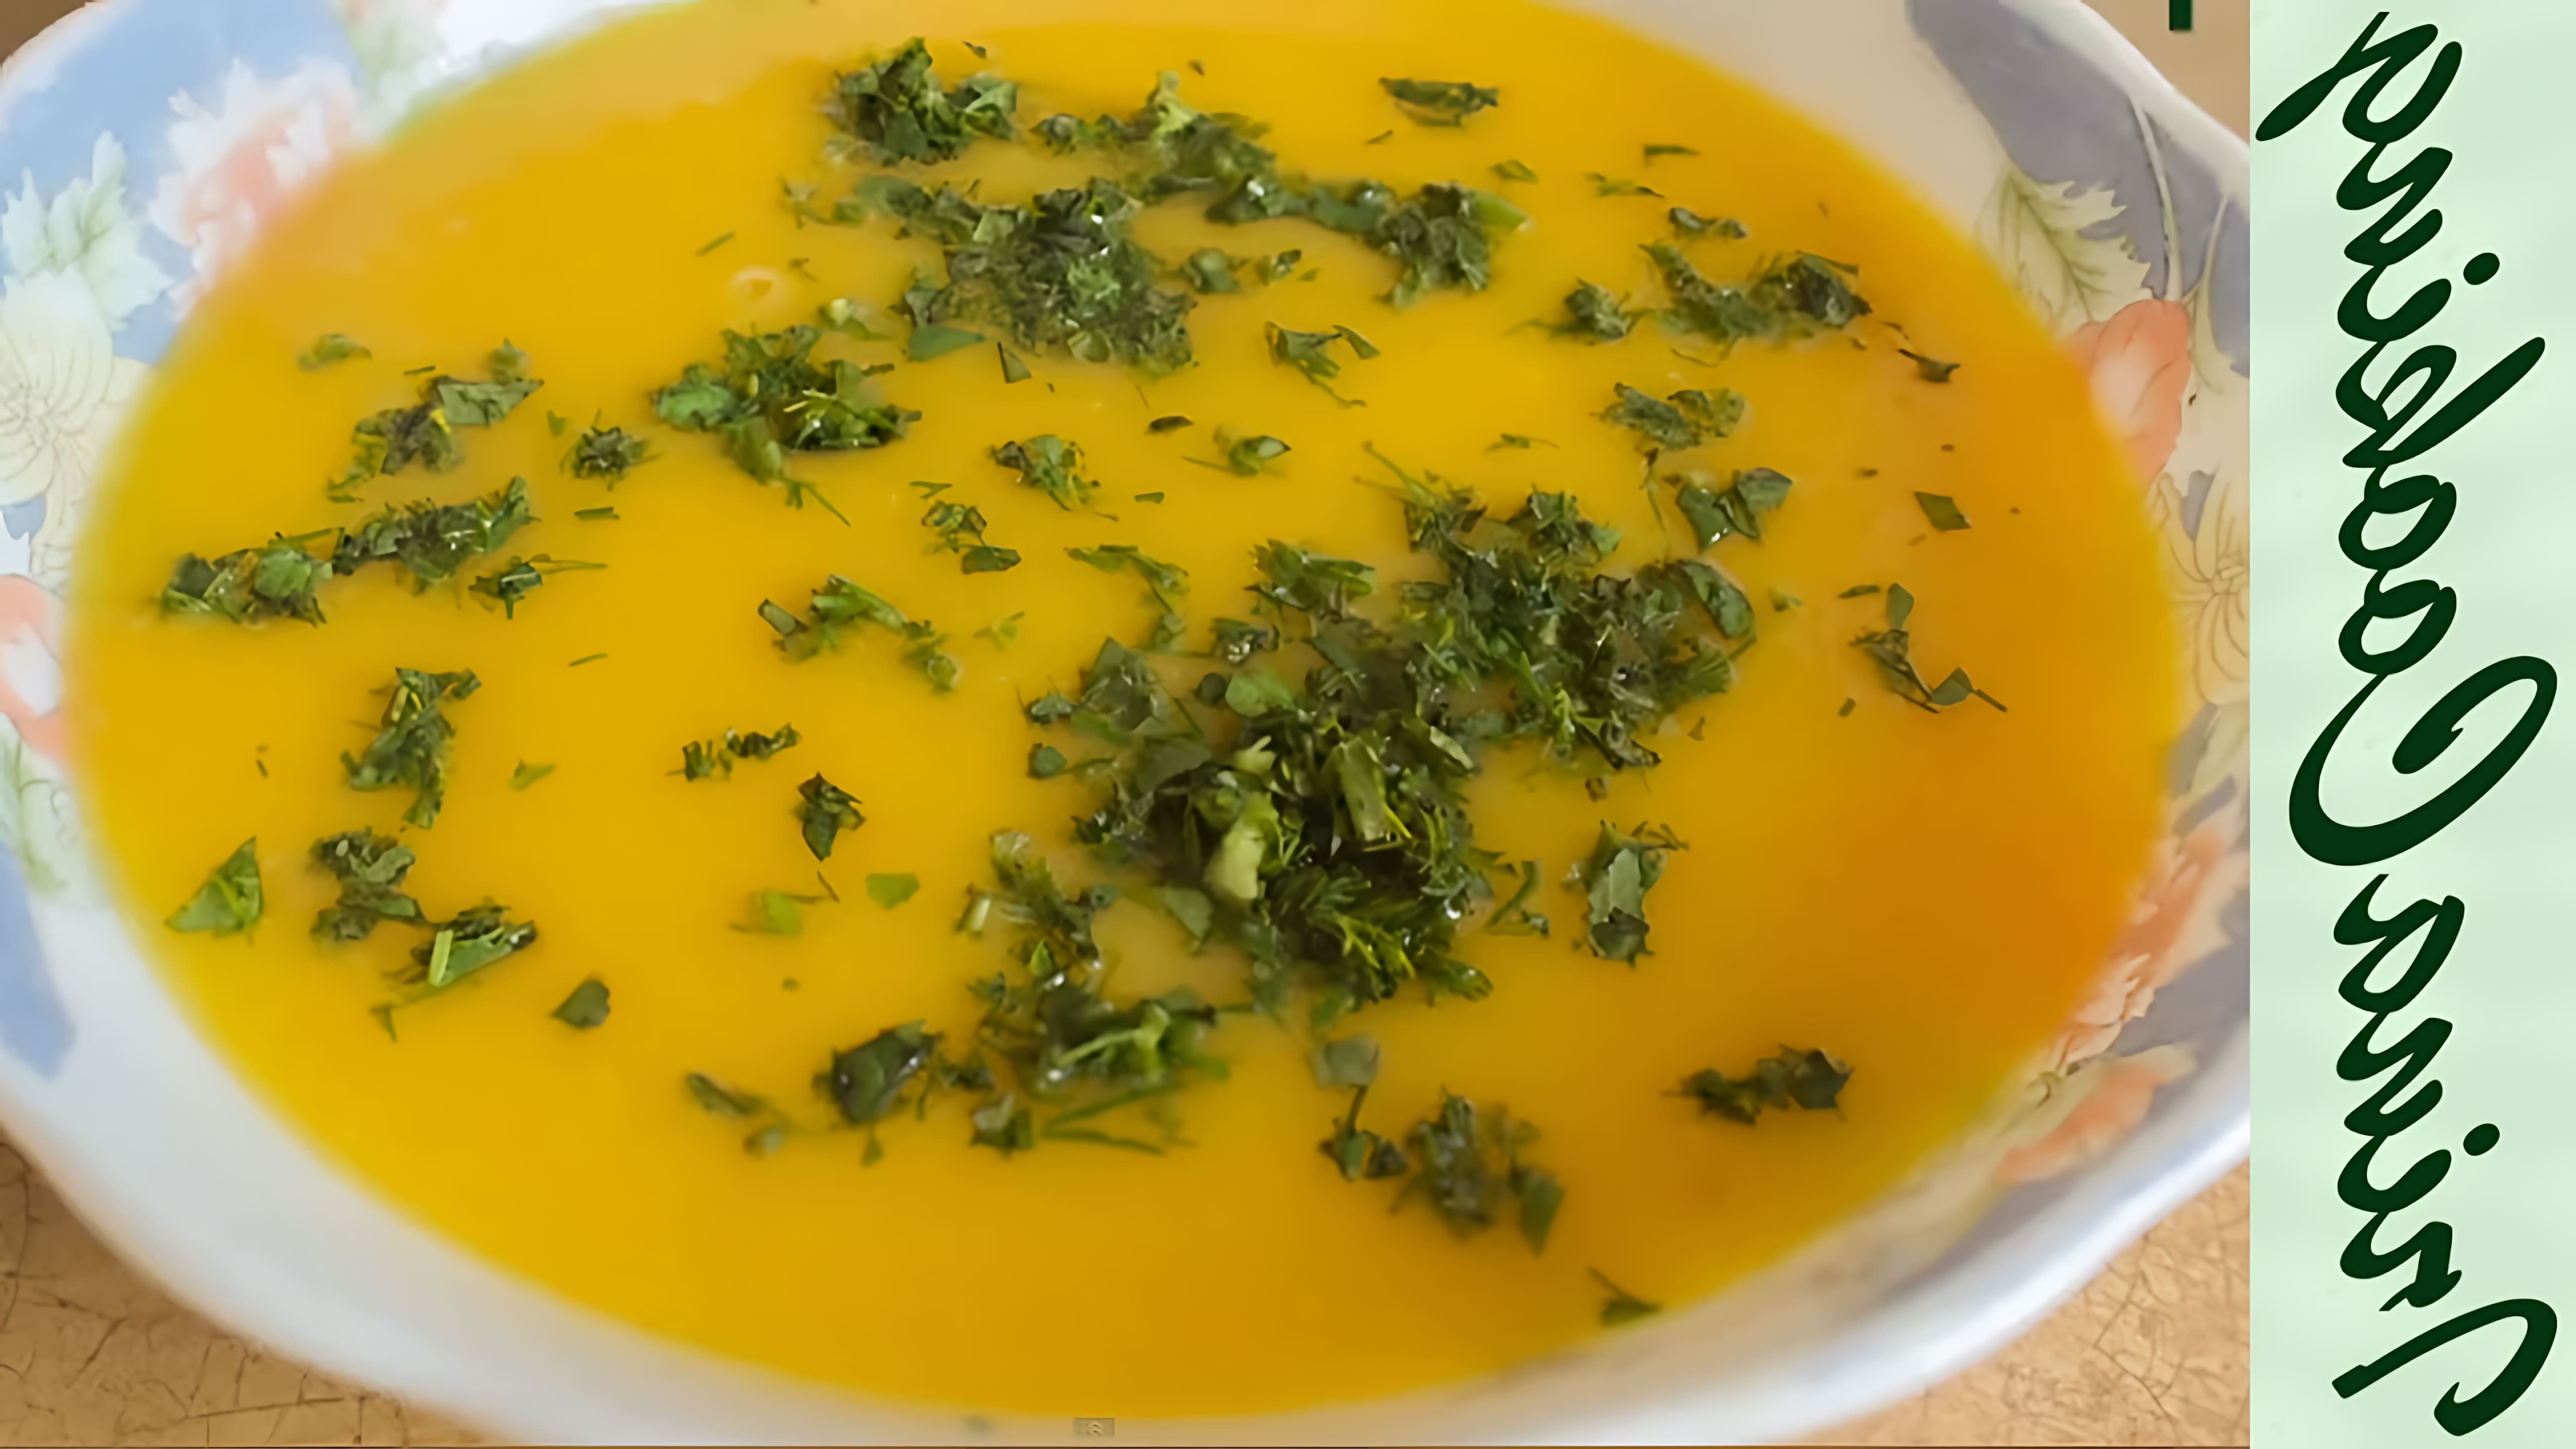 В этом видео демонстрируется рецепт приготовления тыквенного супа-пюре